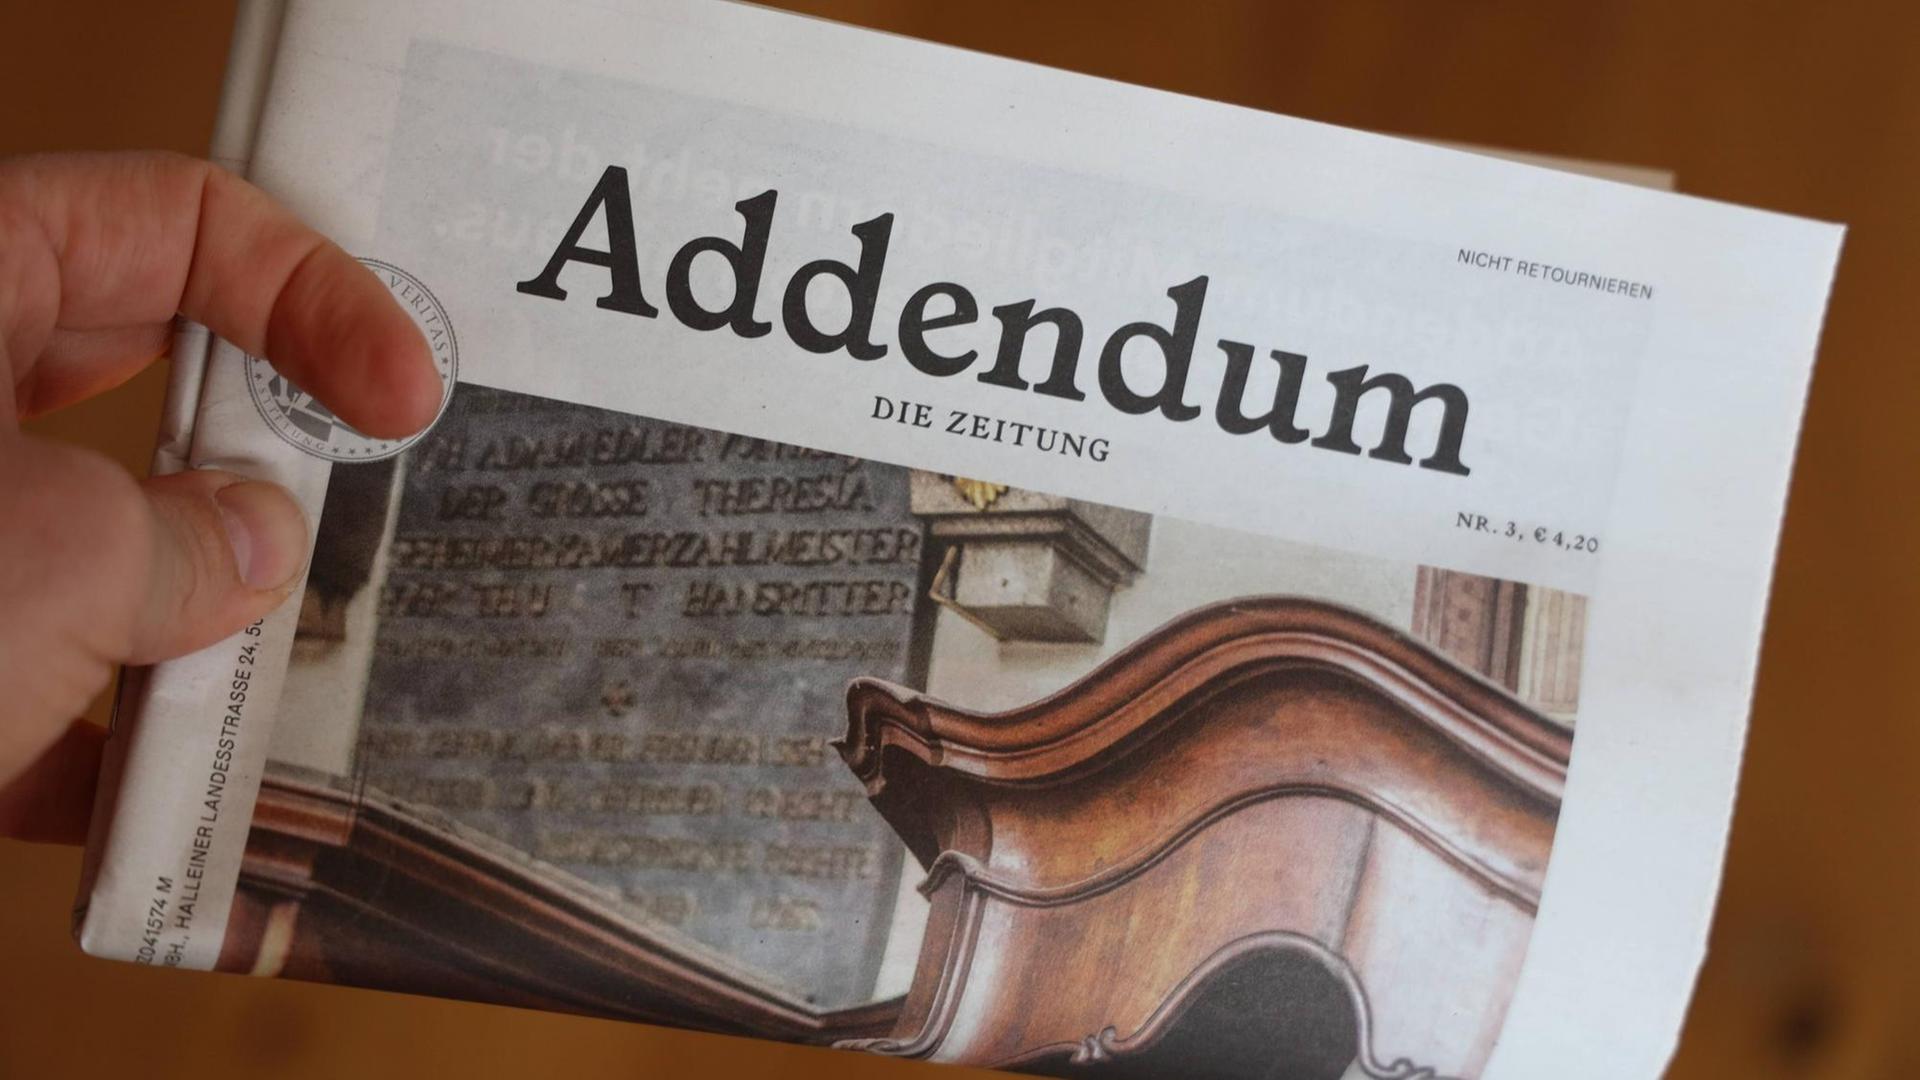 Eine Hand hält eine in der Mitte geknickte Ausgabe der Zeitschrift "Addendum".